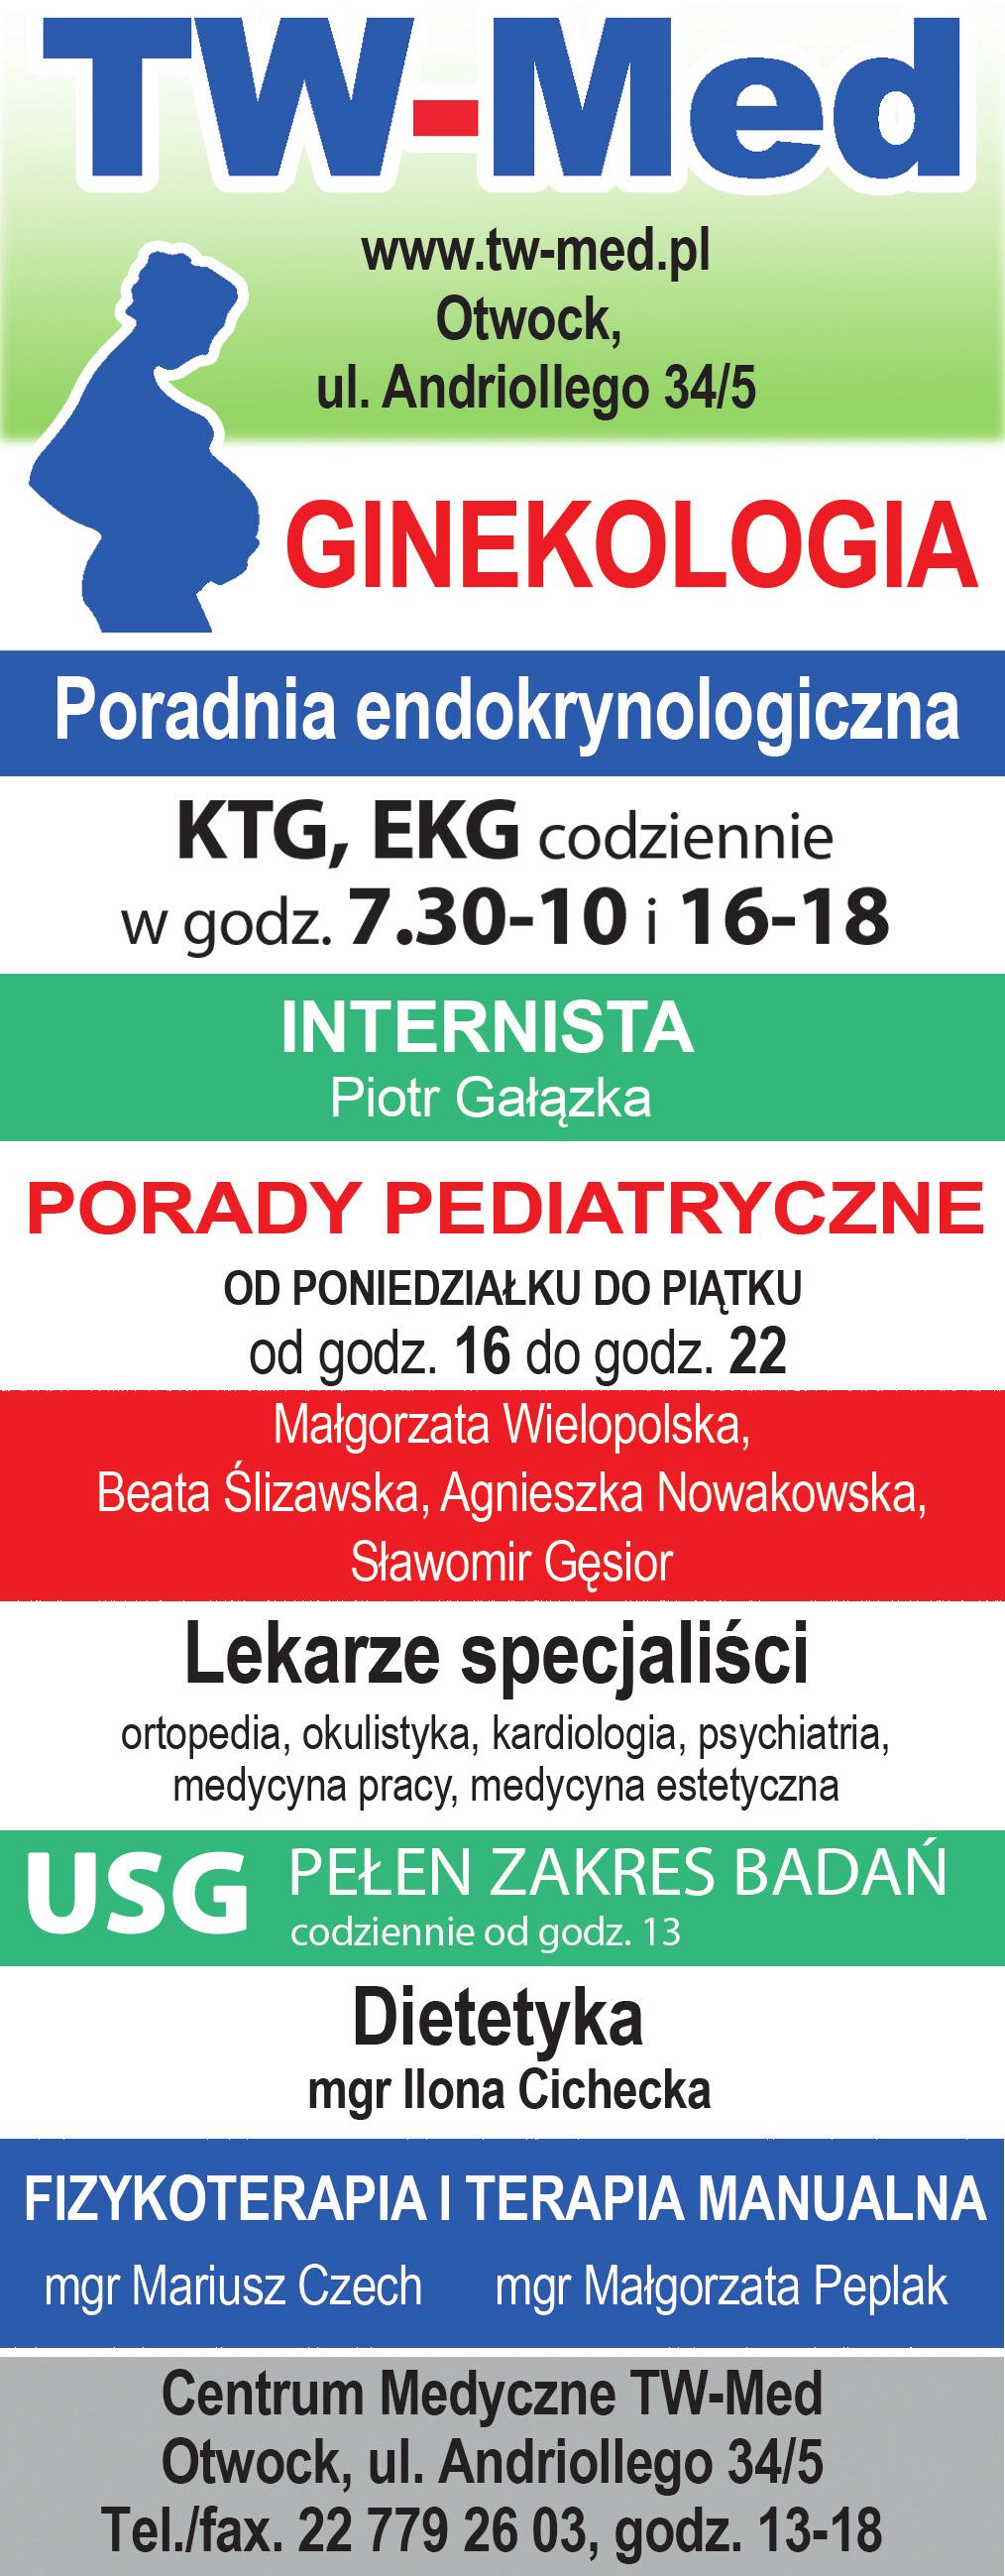 ogłoszenia drobne 35 linia otwocka 7-13 sierpnia 2017 GaBineT okulistyczny SPECJALISTYCZNE CENTRUM REHABILITACJI www.specer.pl lek. małgorzata gruchoła specjalista ii st. okulistyki lek.